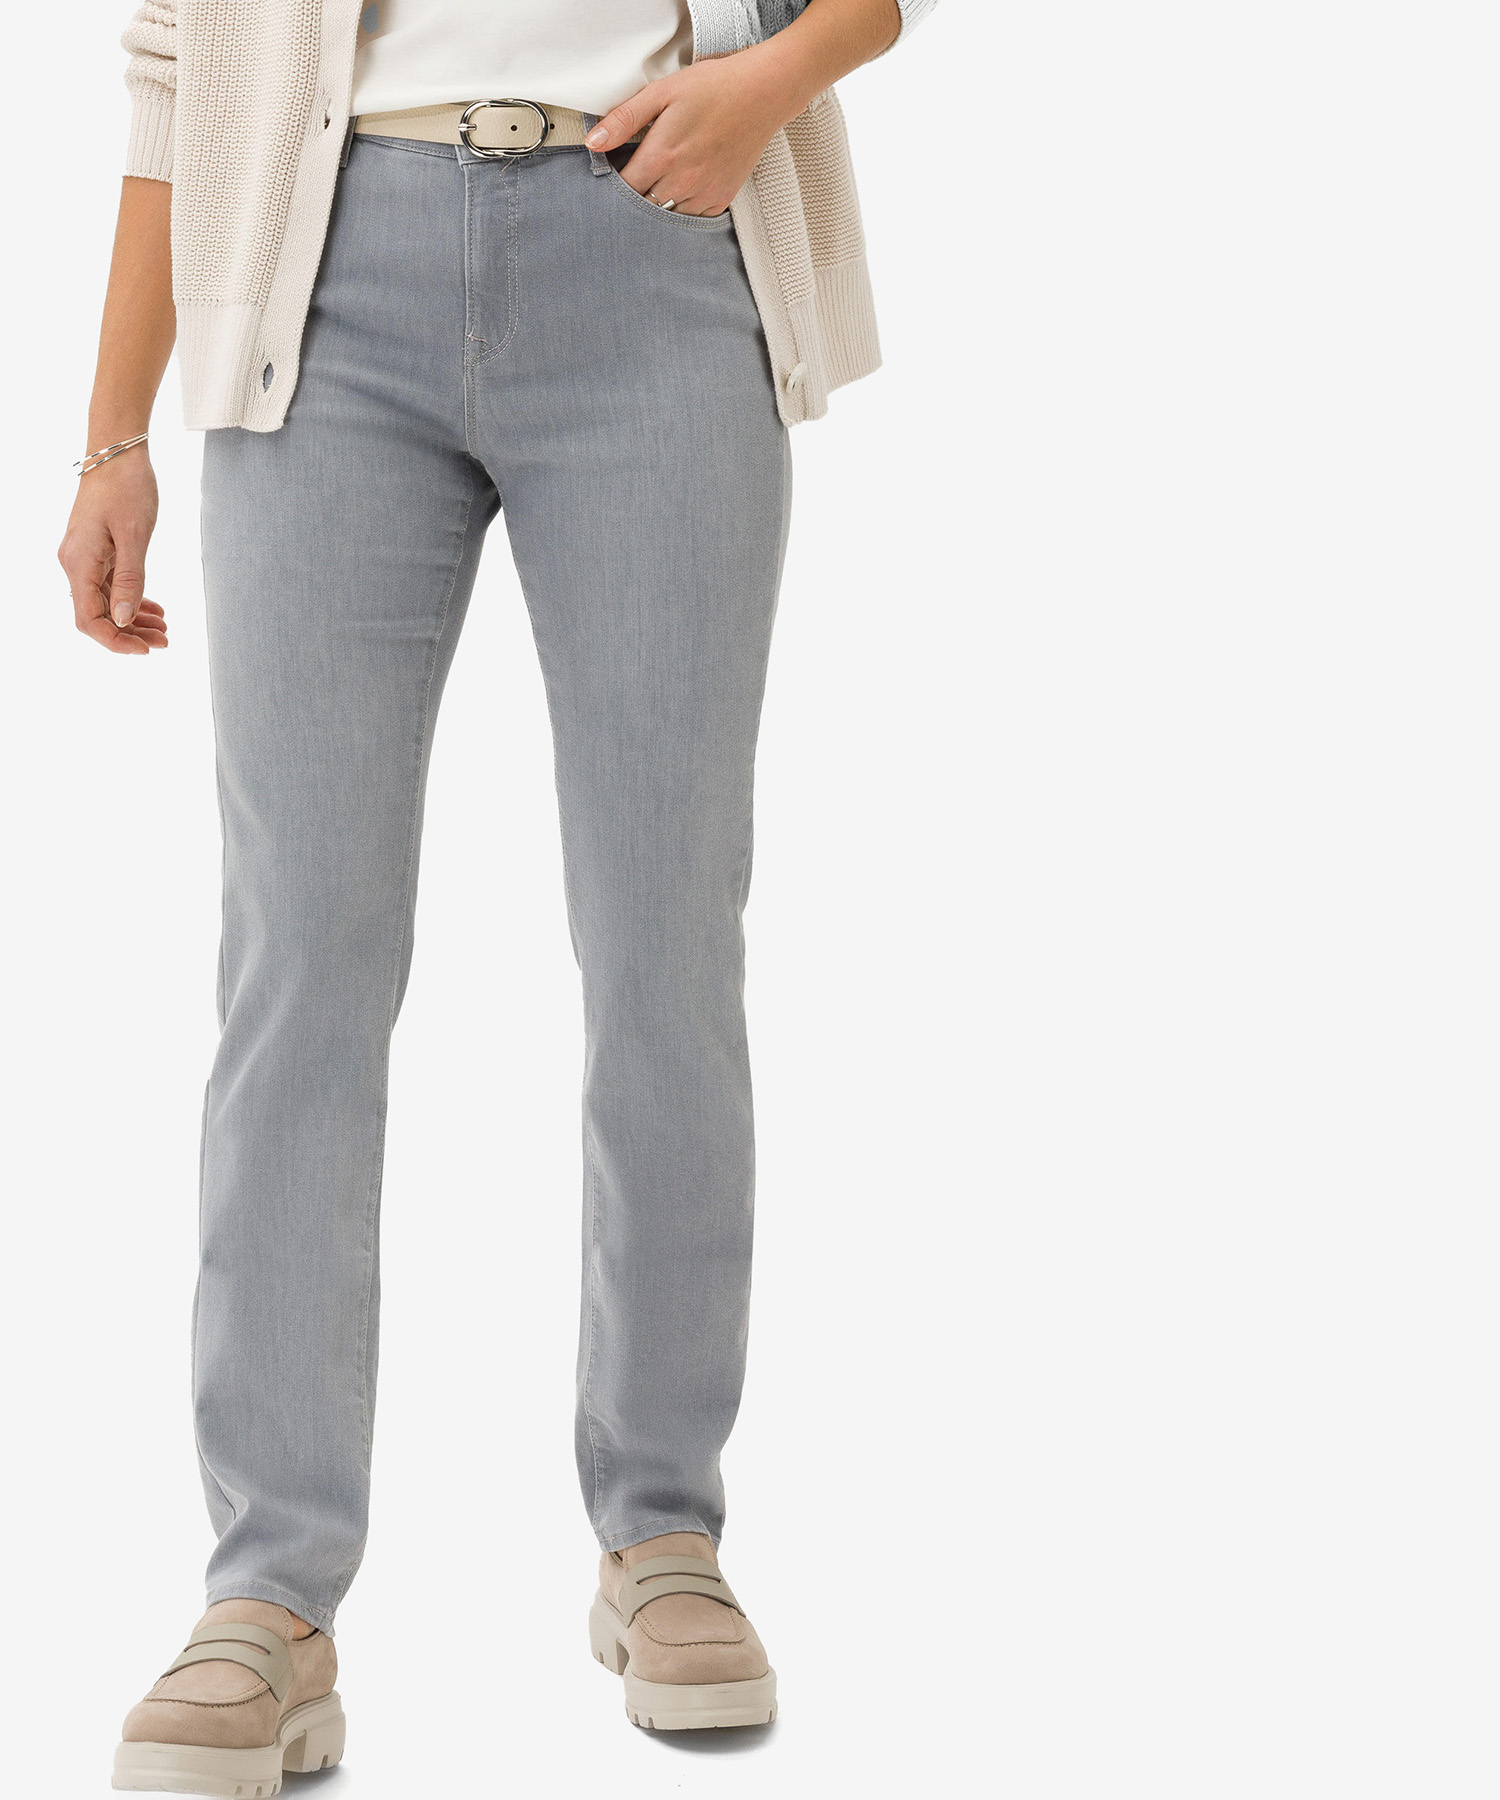 Carola jeans schmaler Passform Brax in Jeans von